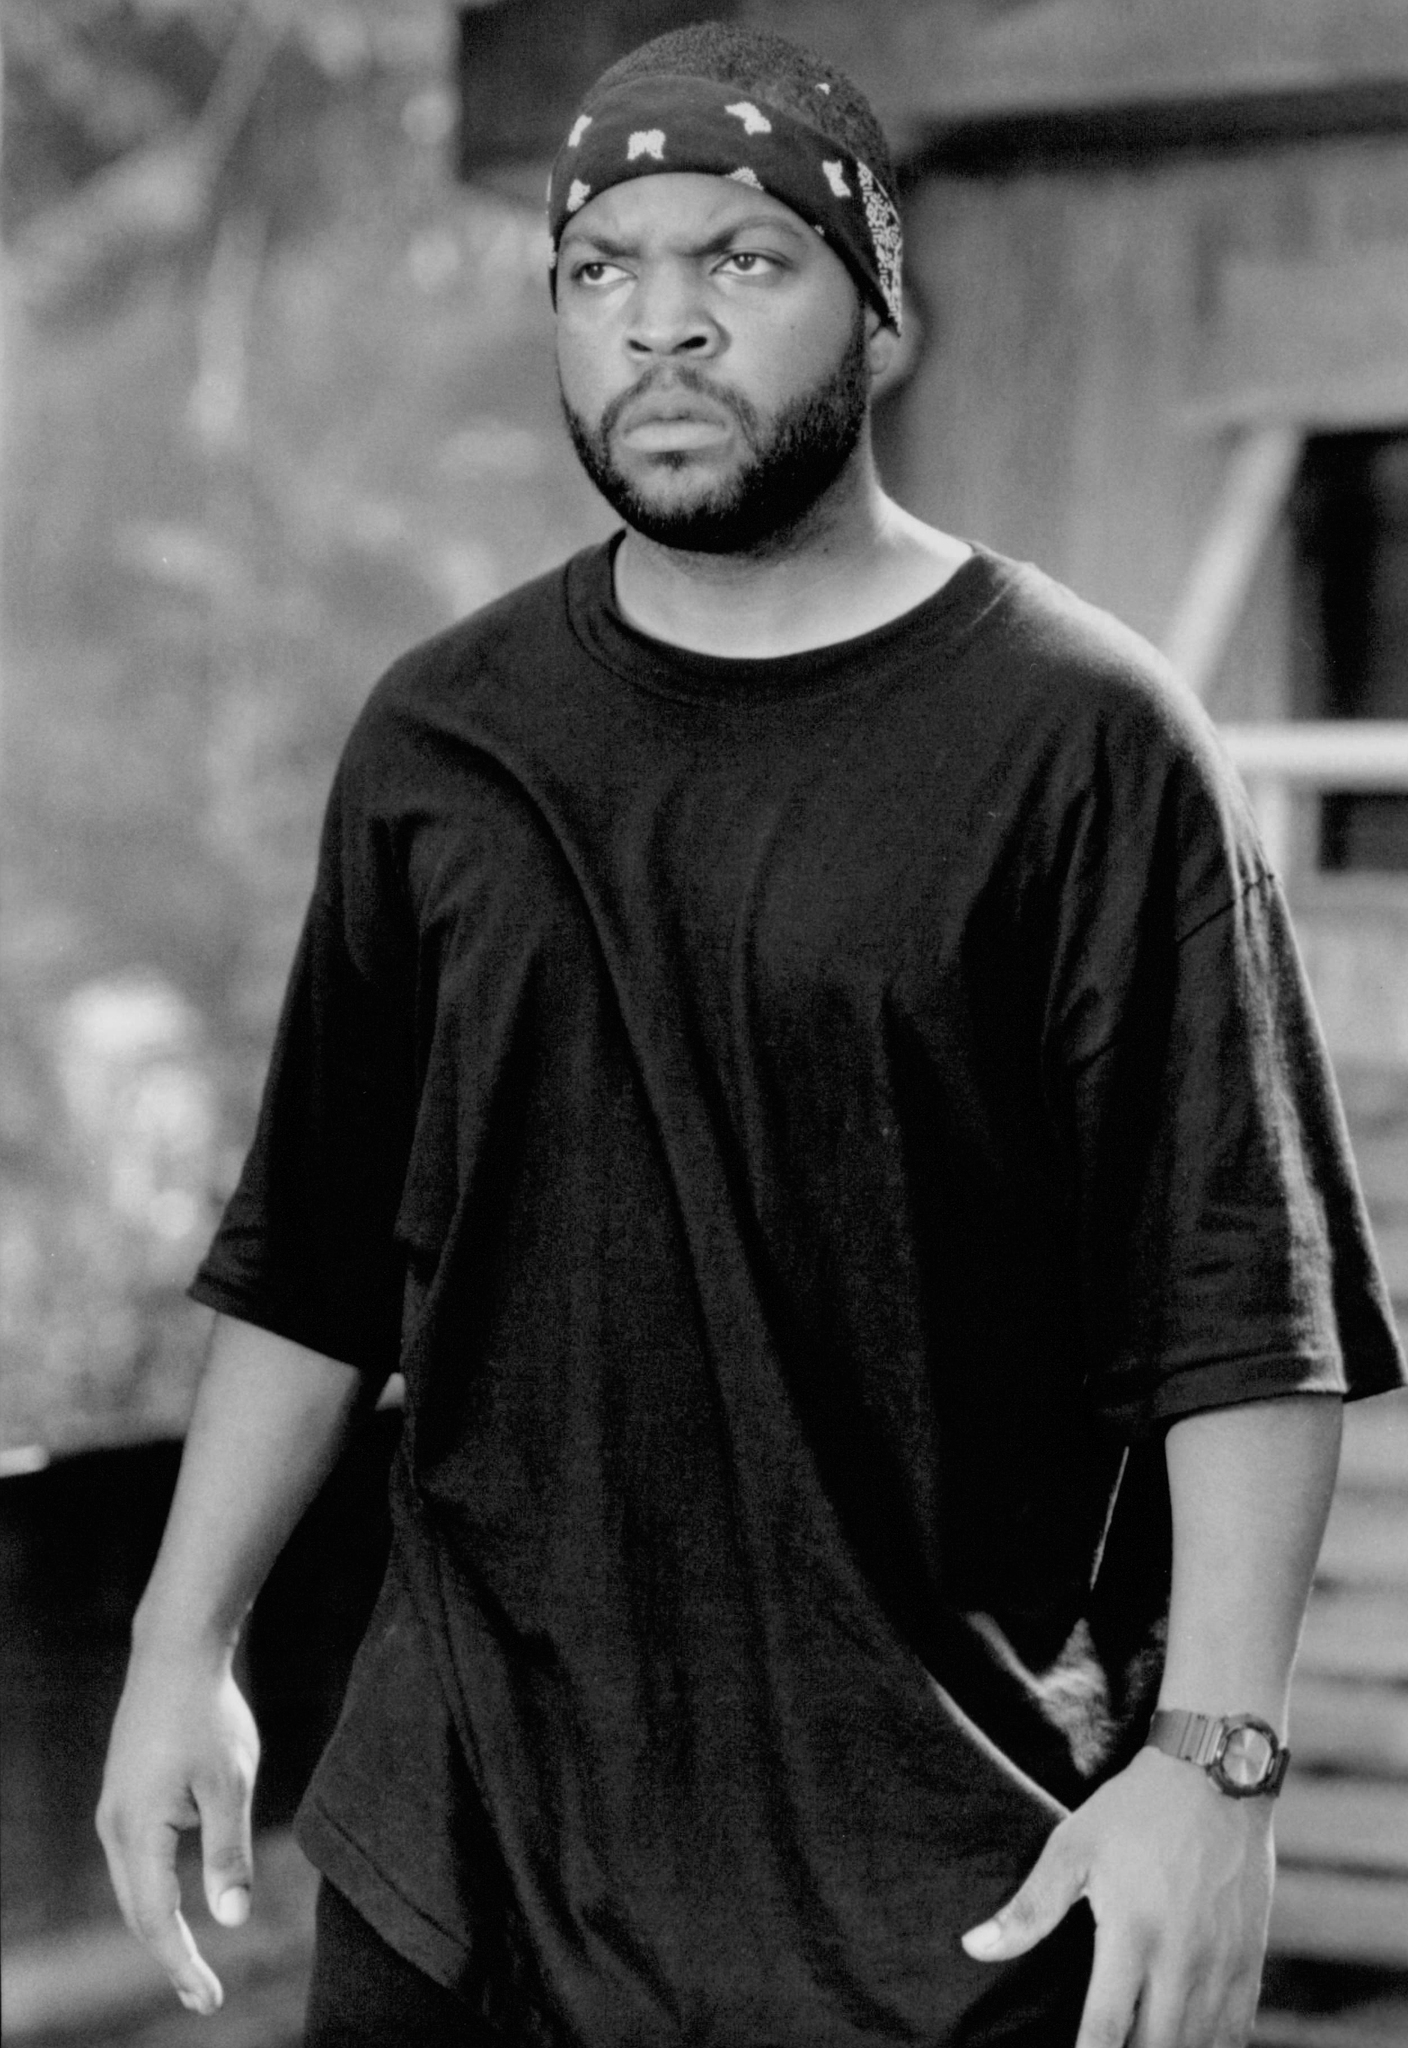 Still of Ice Cube in Anaconda (1997)